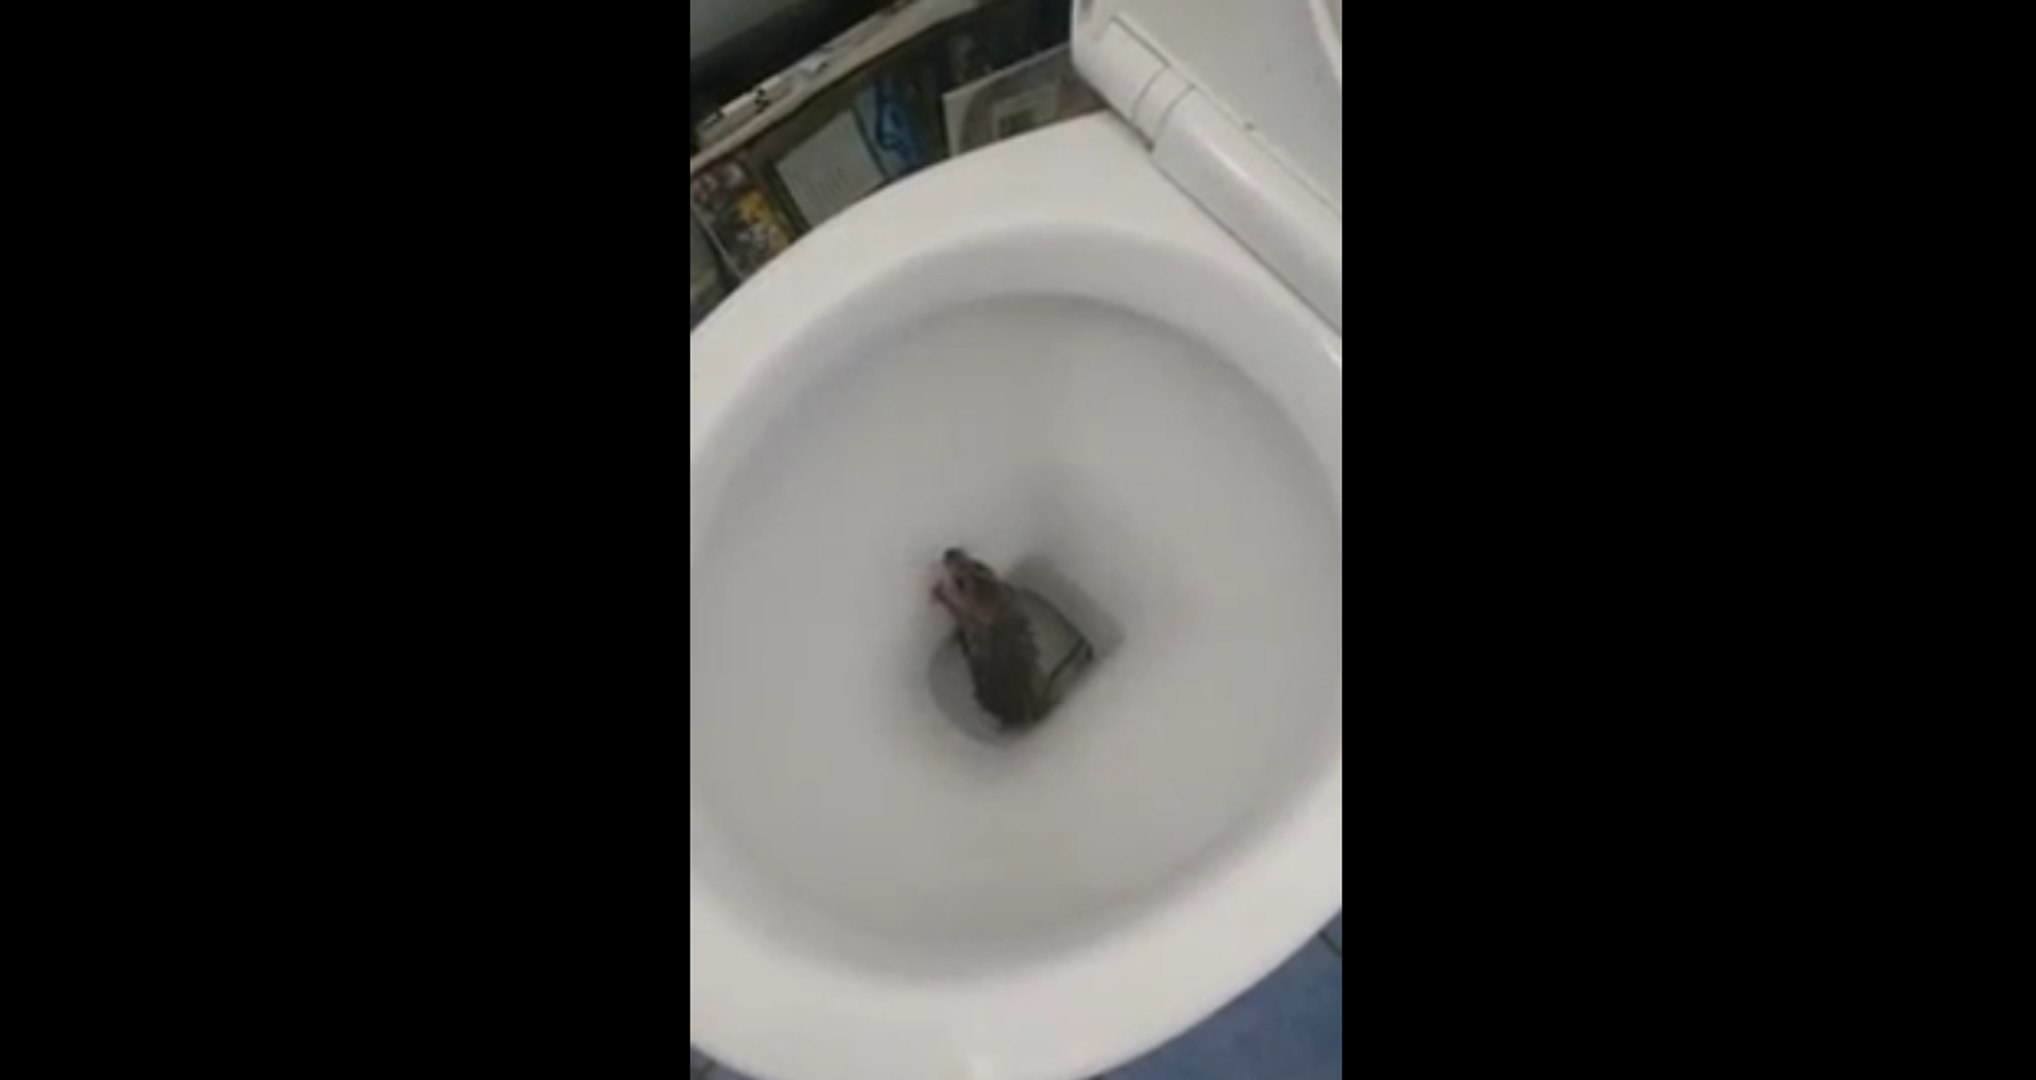 Surprise en tirant la chasse d'eau...un rat - Vidéo Dailymotion